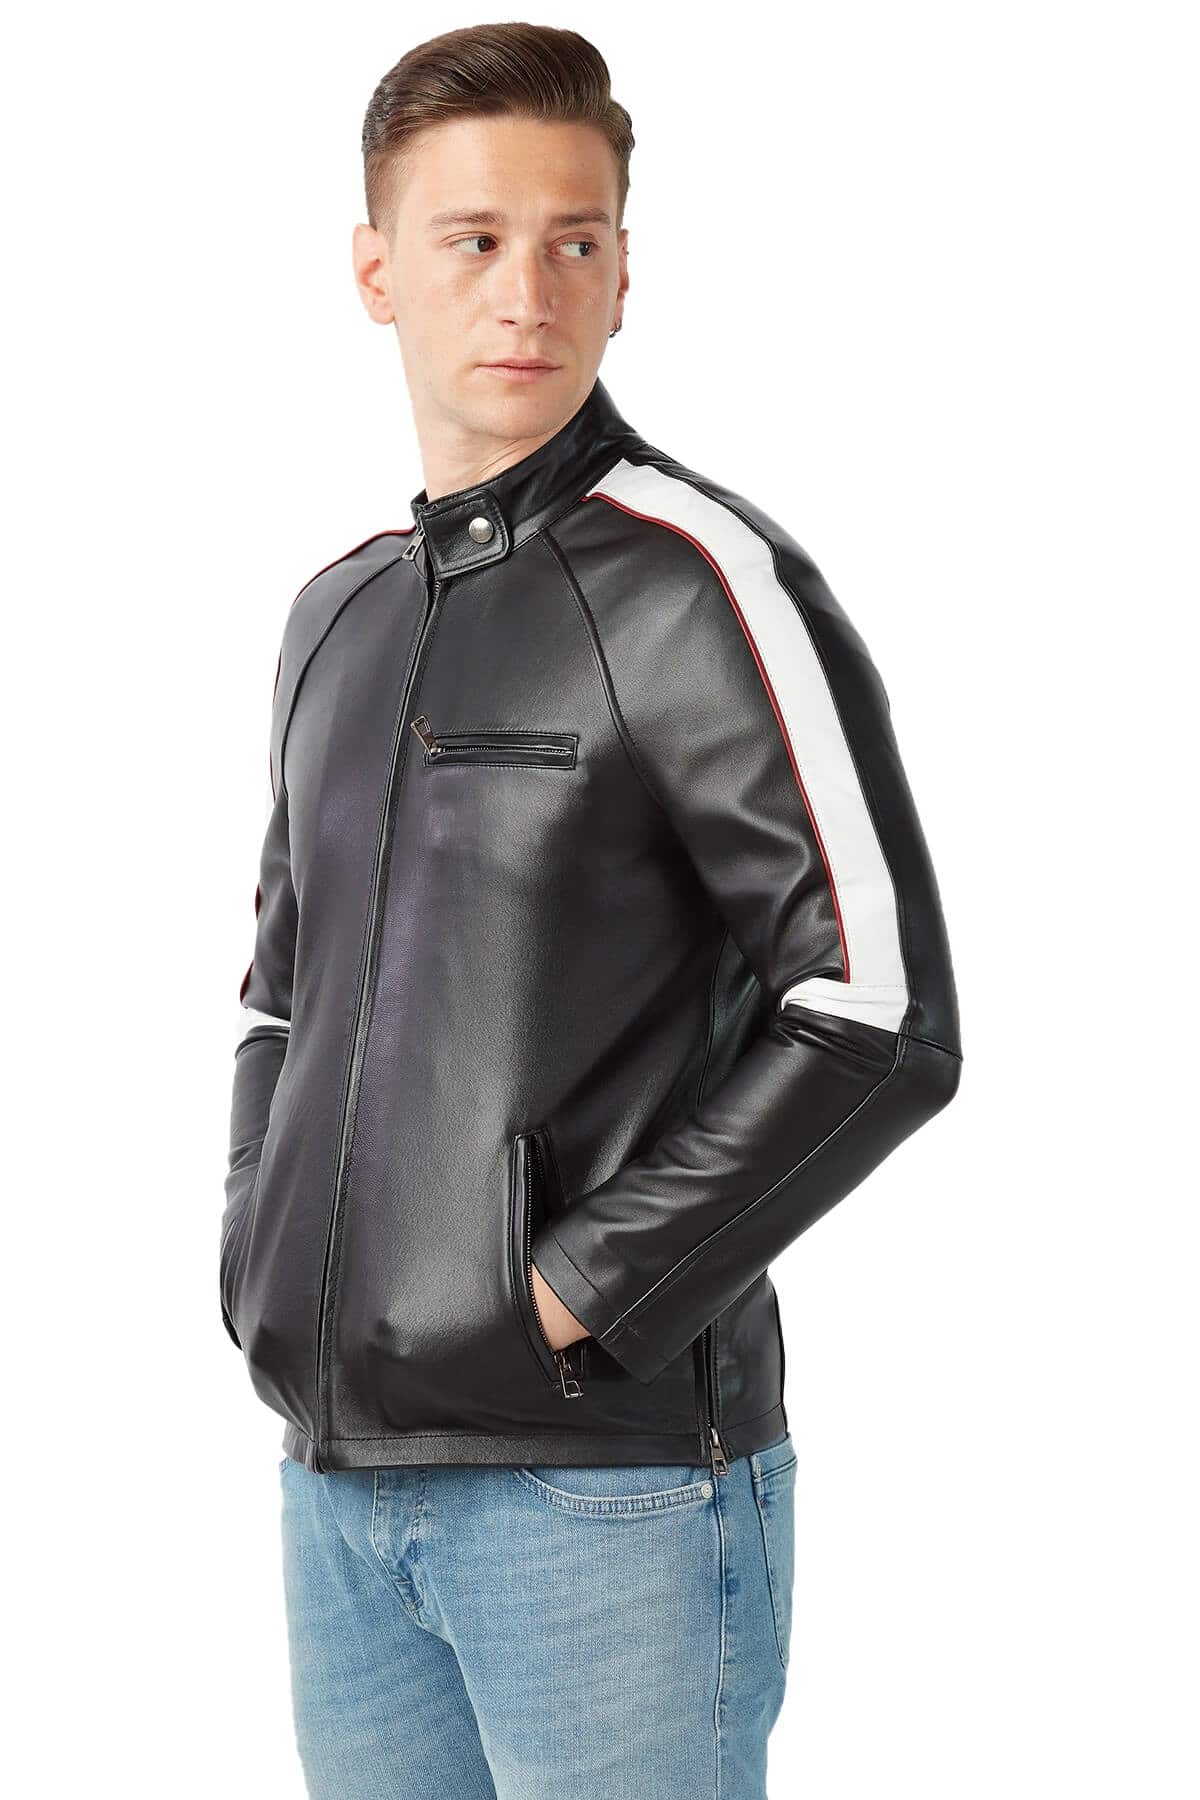 Men's 100 % Real Black Leather Garnish Jacket